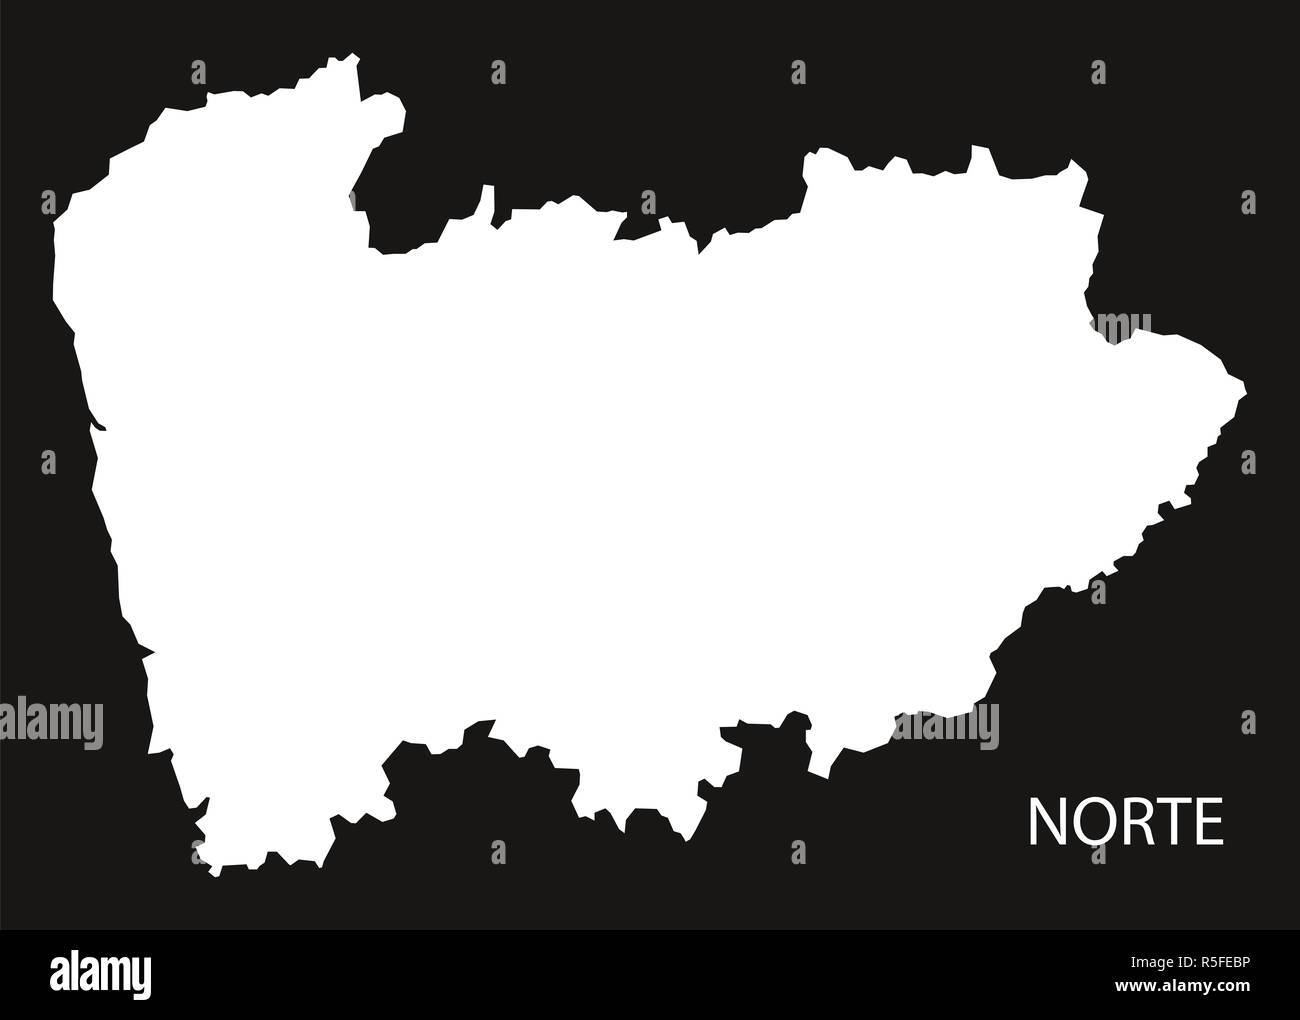 Norte Portugal carte illustration silhouette noire forme inversée Banque D'Images